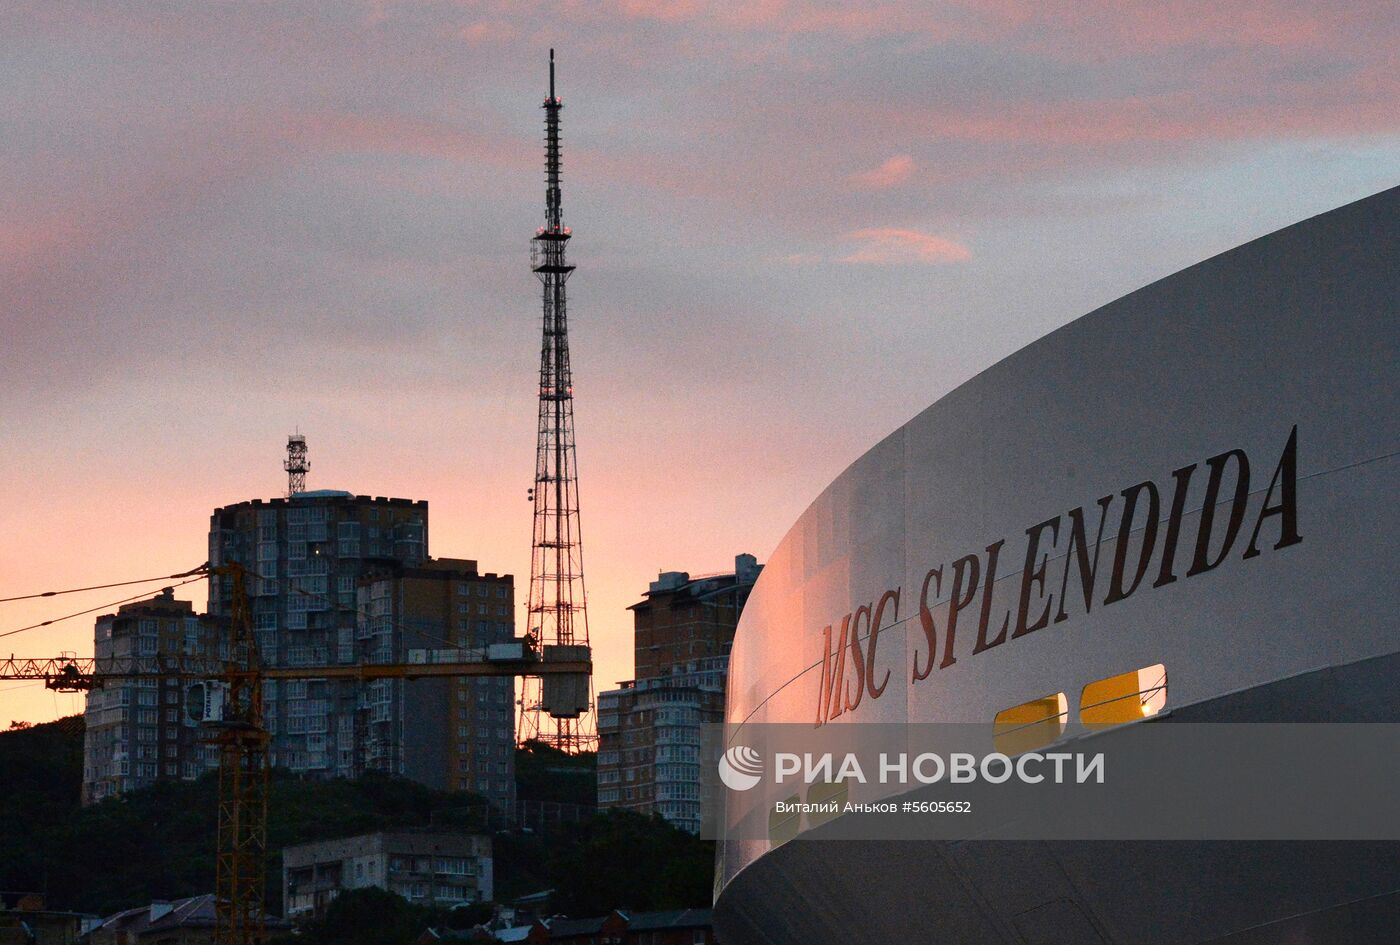 Прибытие суперлайнера MSC Splendida во Владивосток 